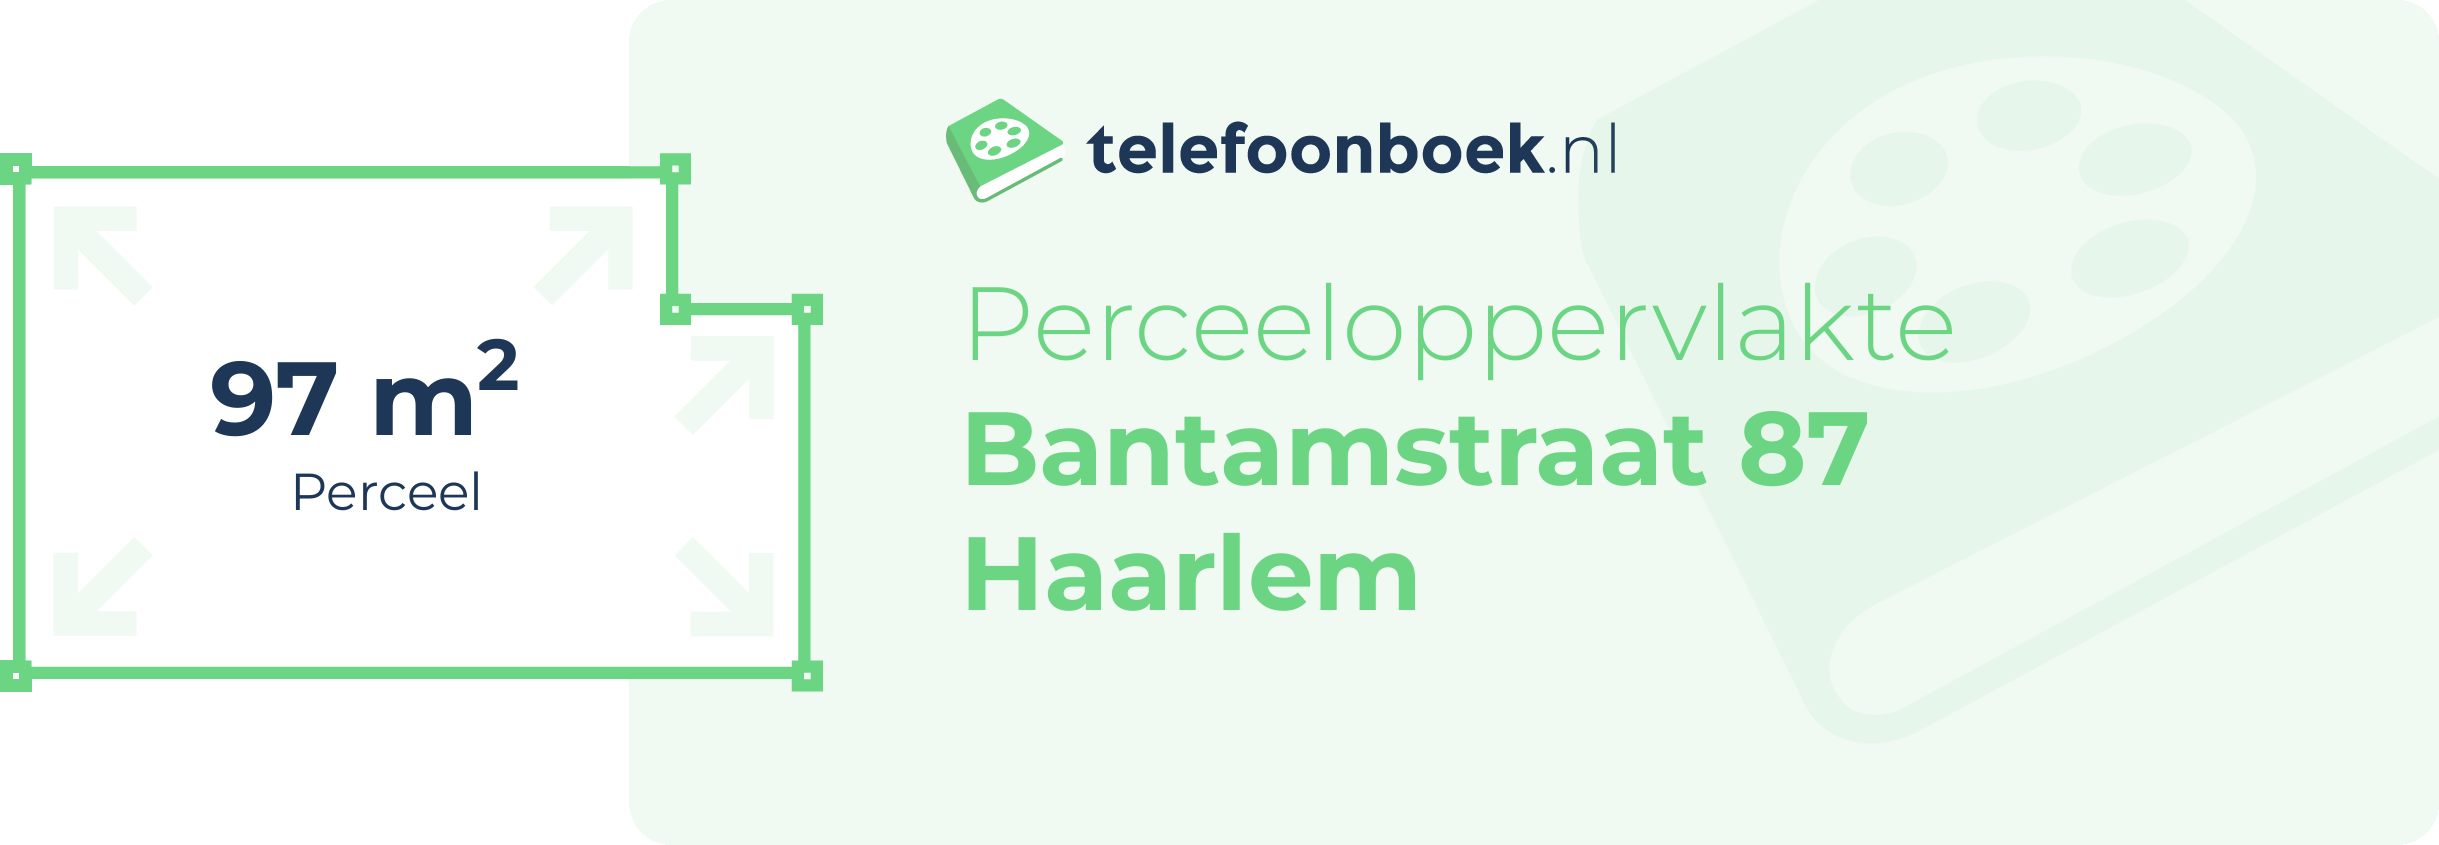 Perceeloppervlakte Bantamstraat 87 Haarlem